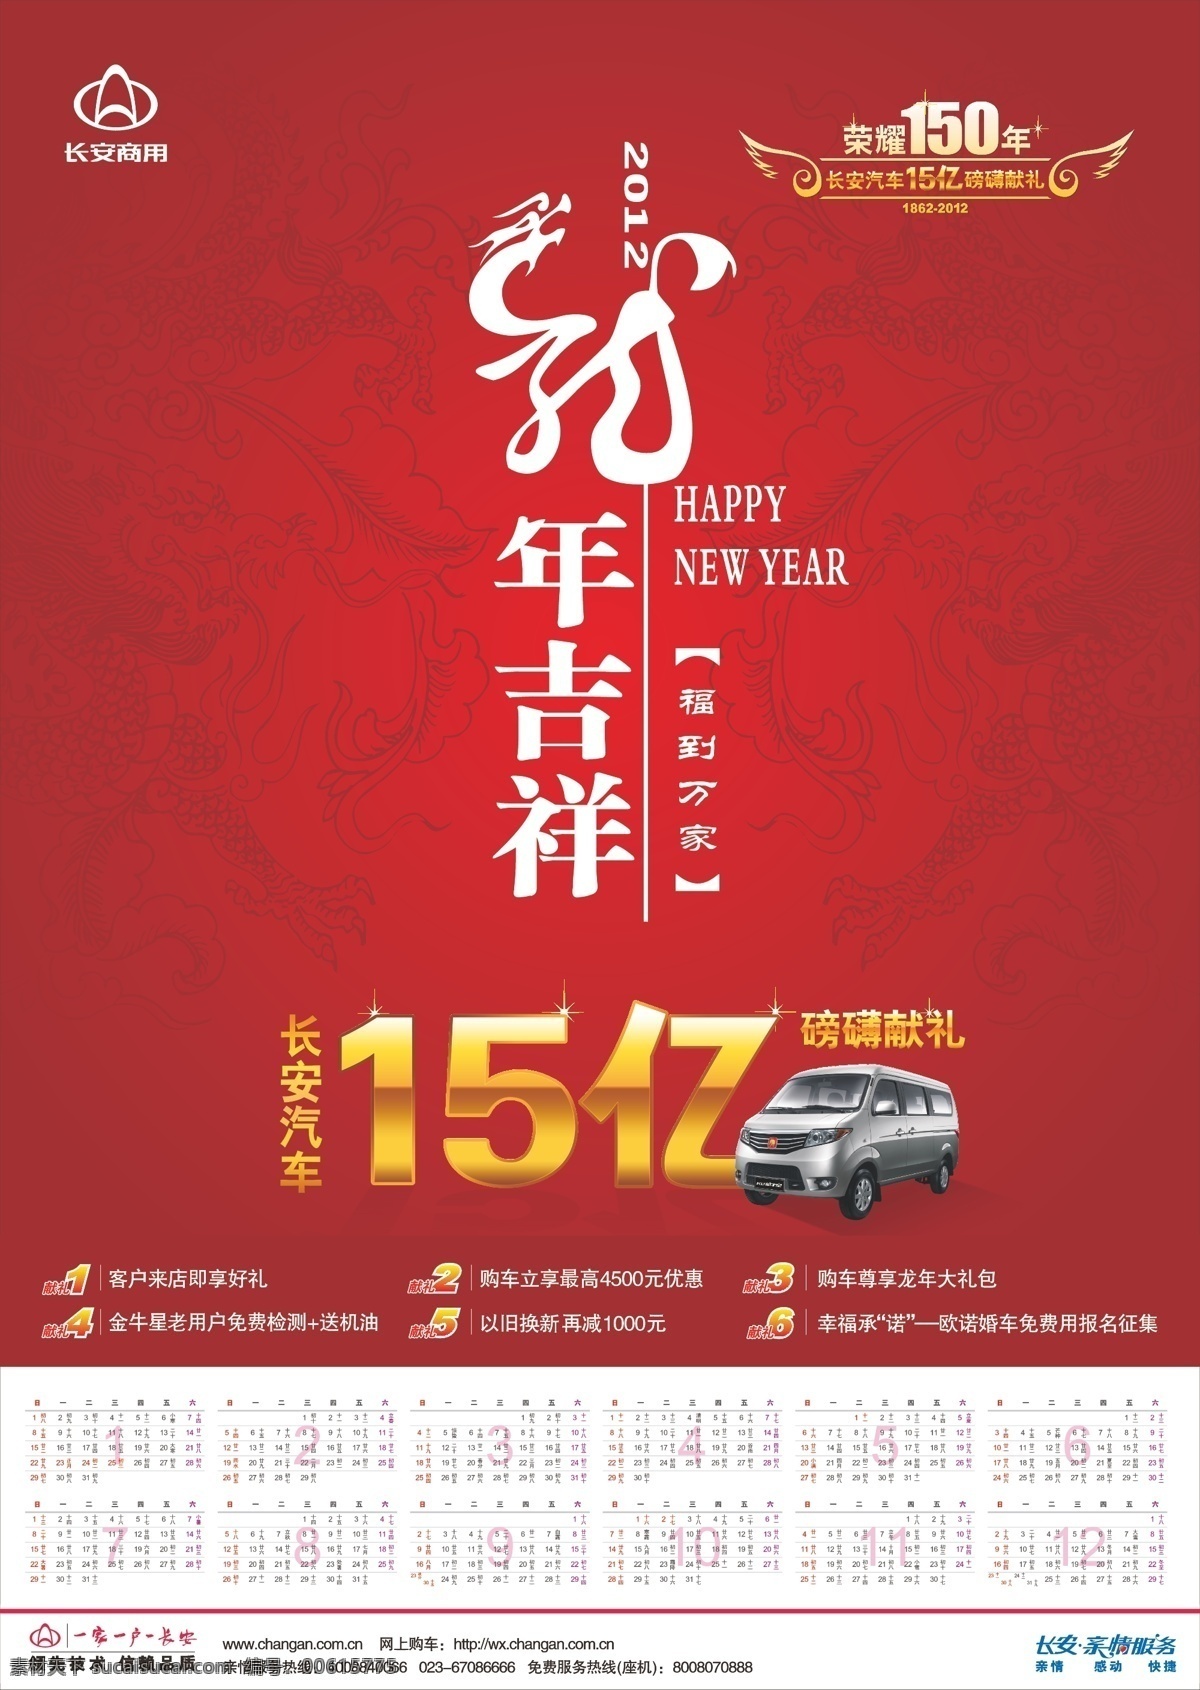 年历 小 礼品 标志 红色背景图 龙年 汽车 日历表